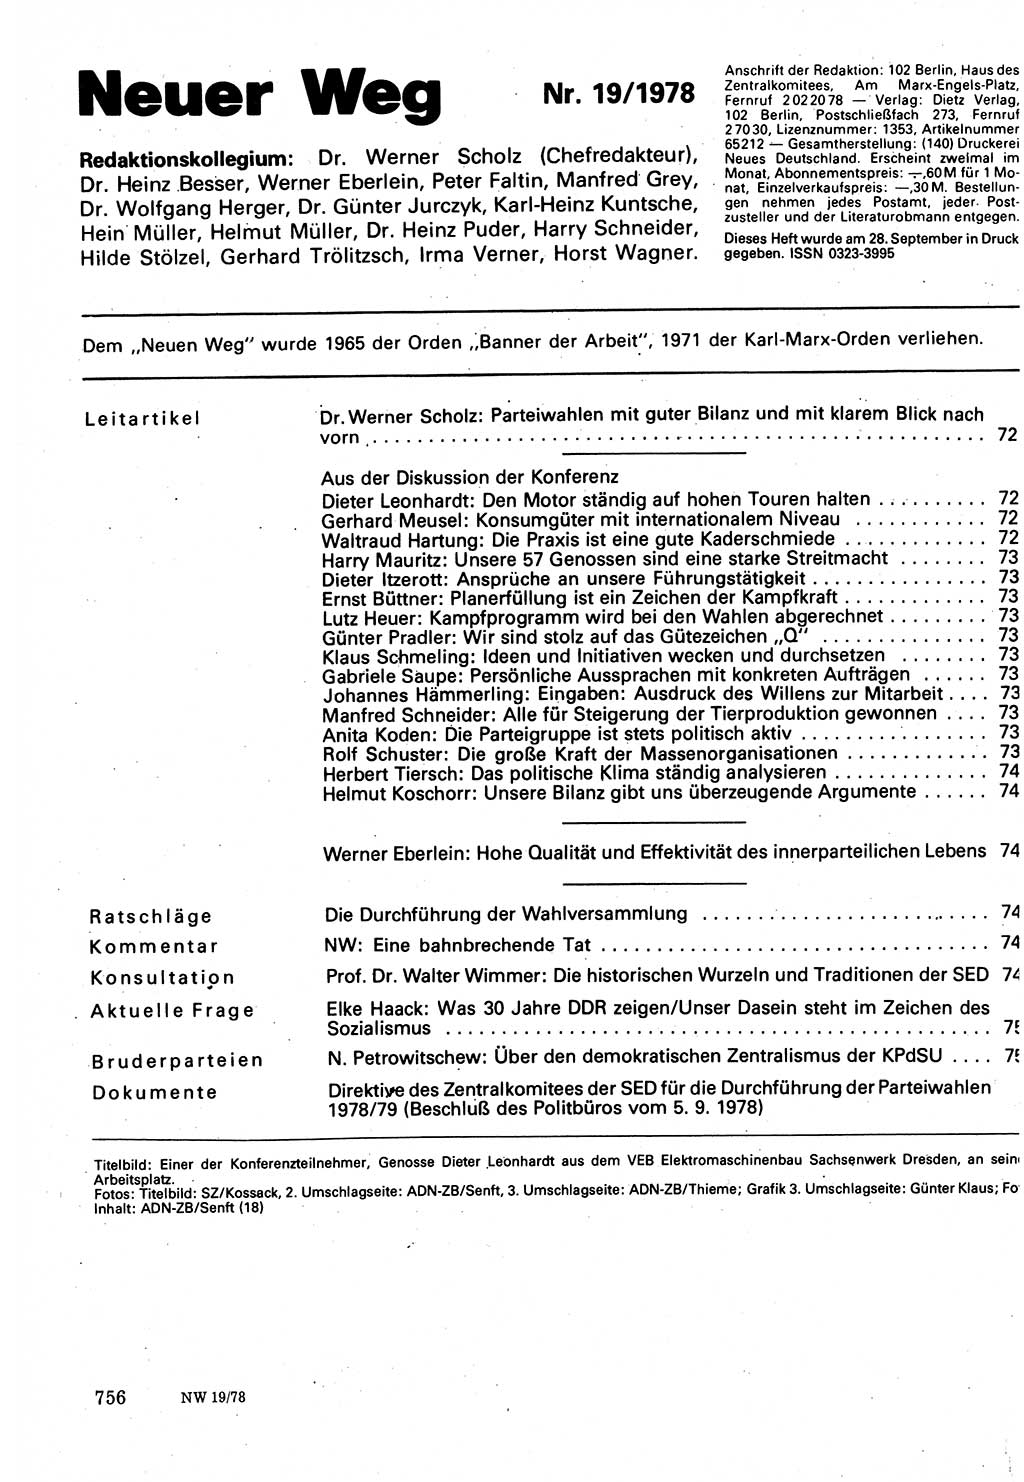 Neuer Weg (NW), Organ des Zentralkomitees (ZK) der SED (Sozialistische Einheitspartei Deutschlands) für Fragen des Parteilebens, 33. Jahrgang [Deutsche Demokratische Republik (DDR)] 1978, Seite 756 (NW ZK SED DDR 1978, S. 756)